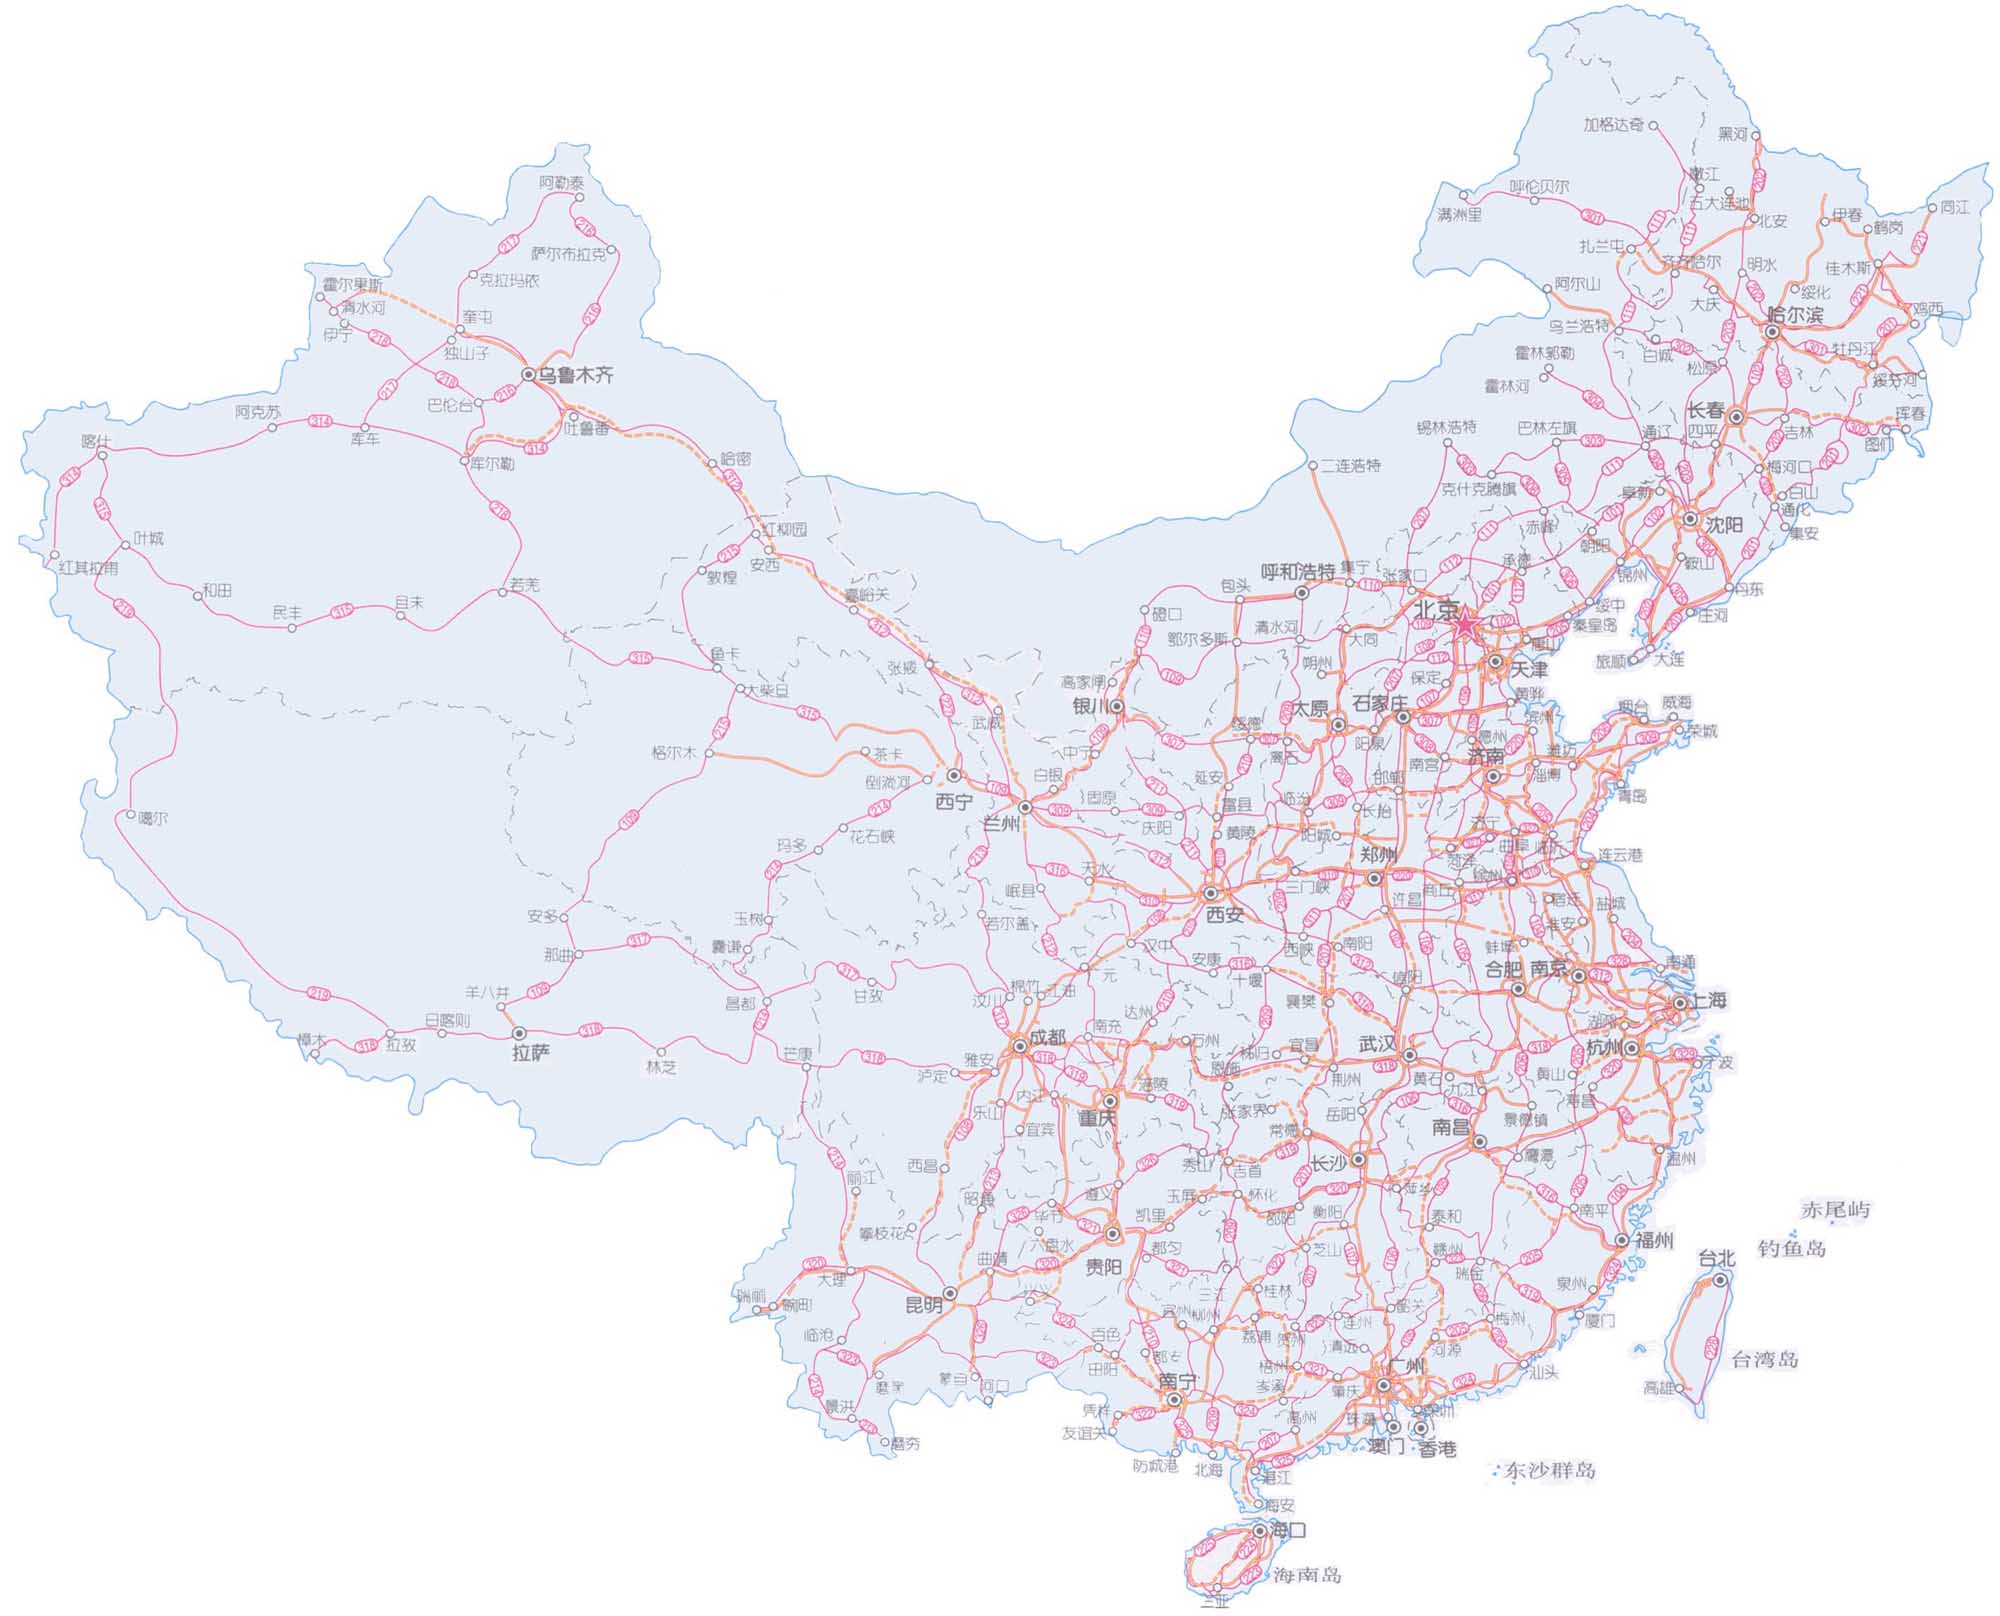 China Road Map 